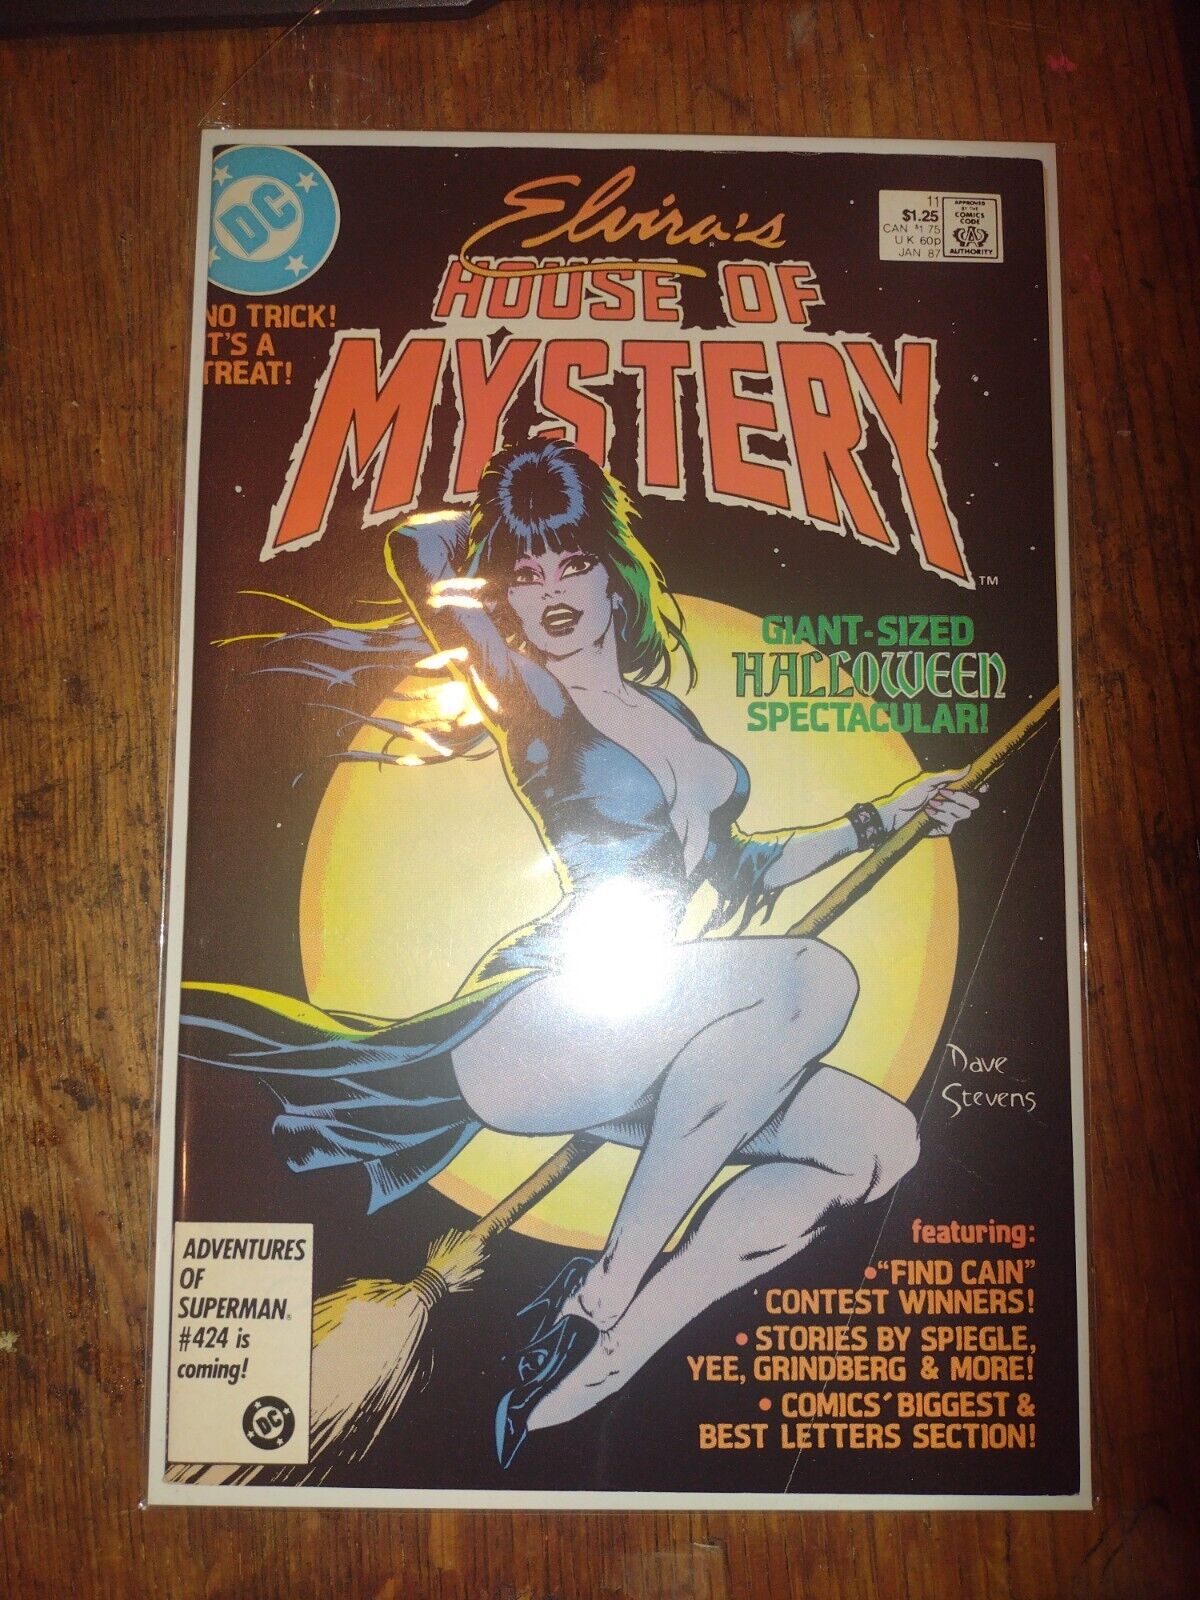 Elvira's House Of Mystery #11 (1987) Iconic Dave Stevens GGA Cover VF+ 